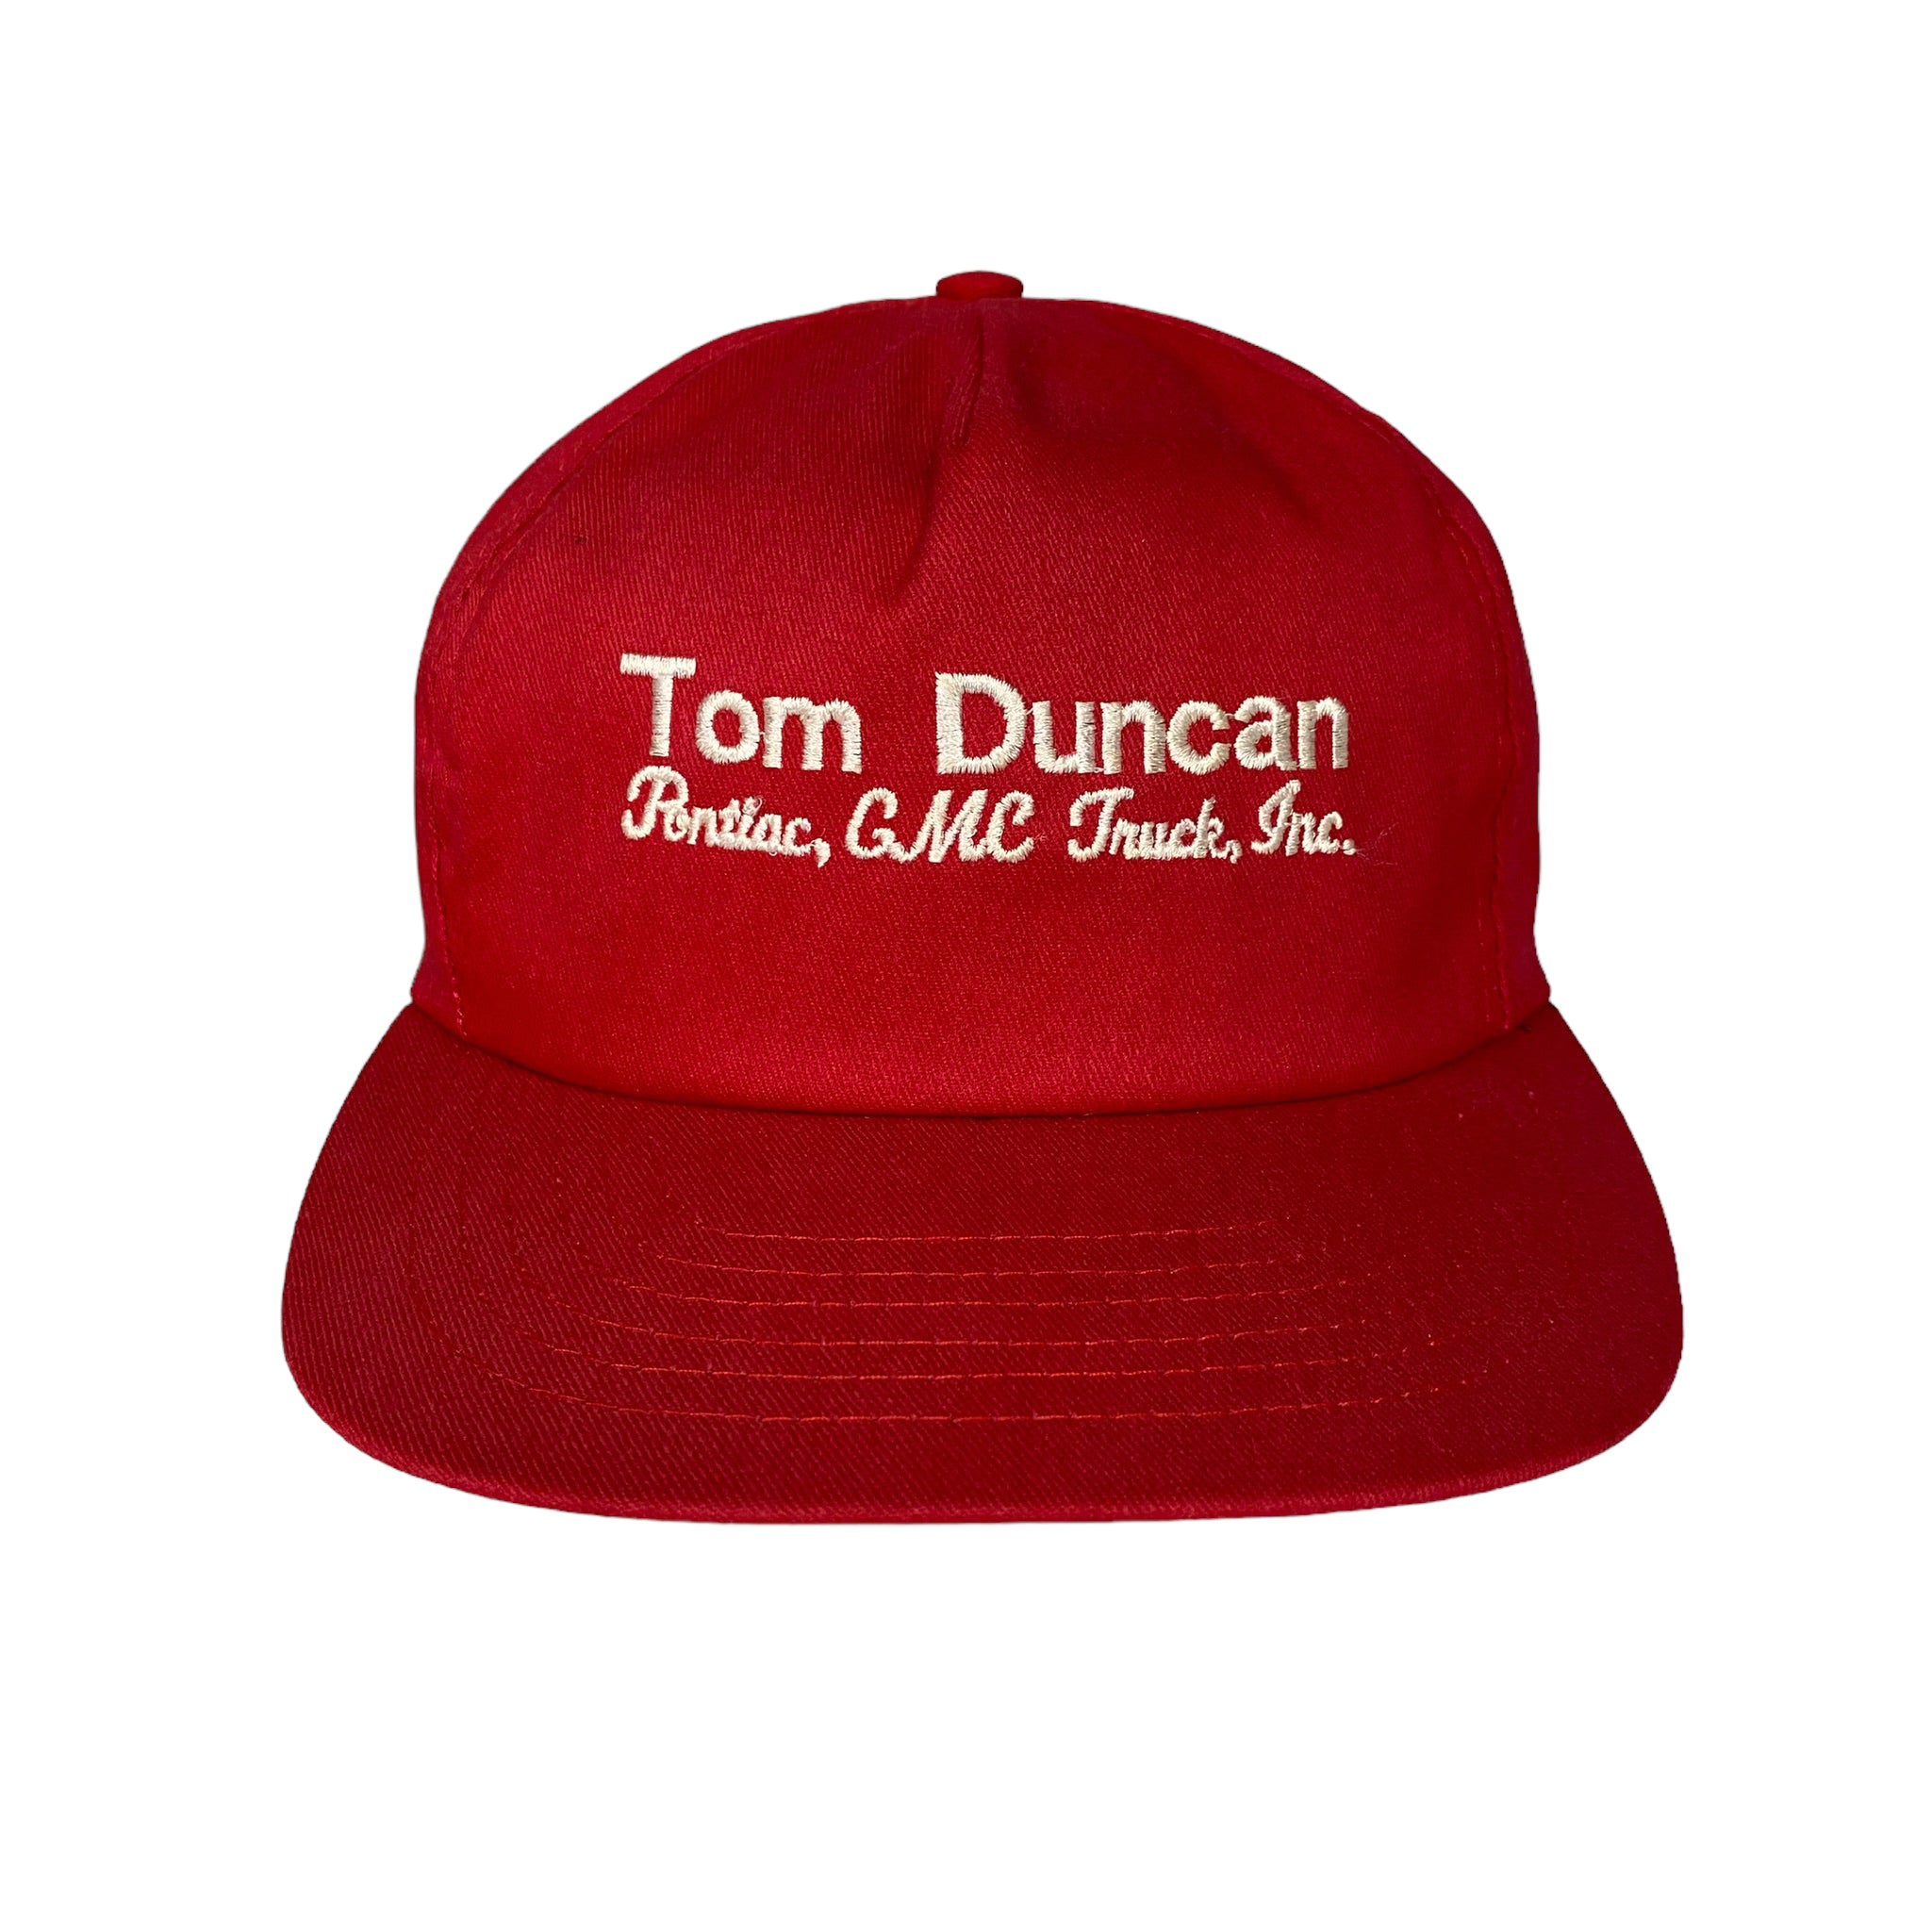 Vintage Tom Duncan GMC StrapBack